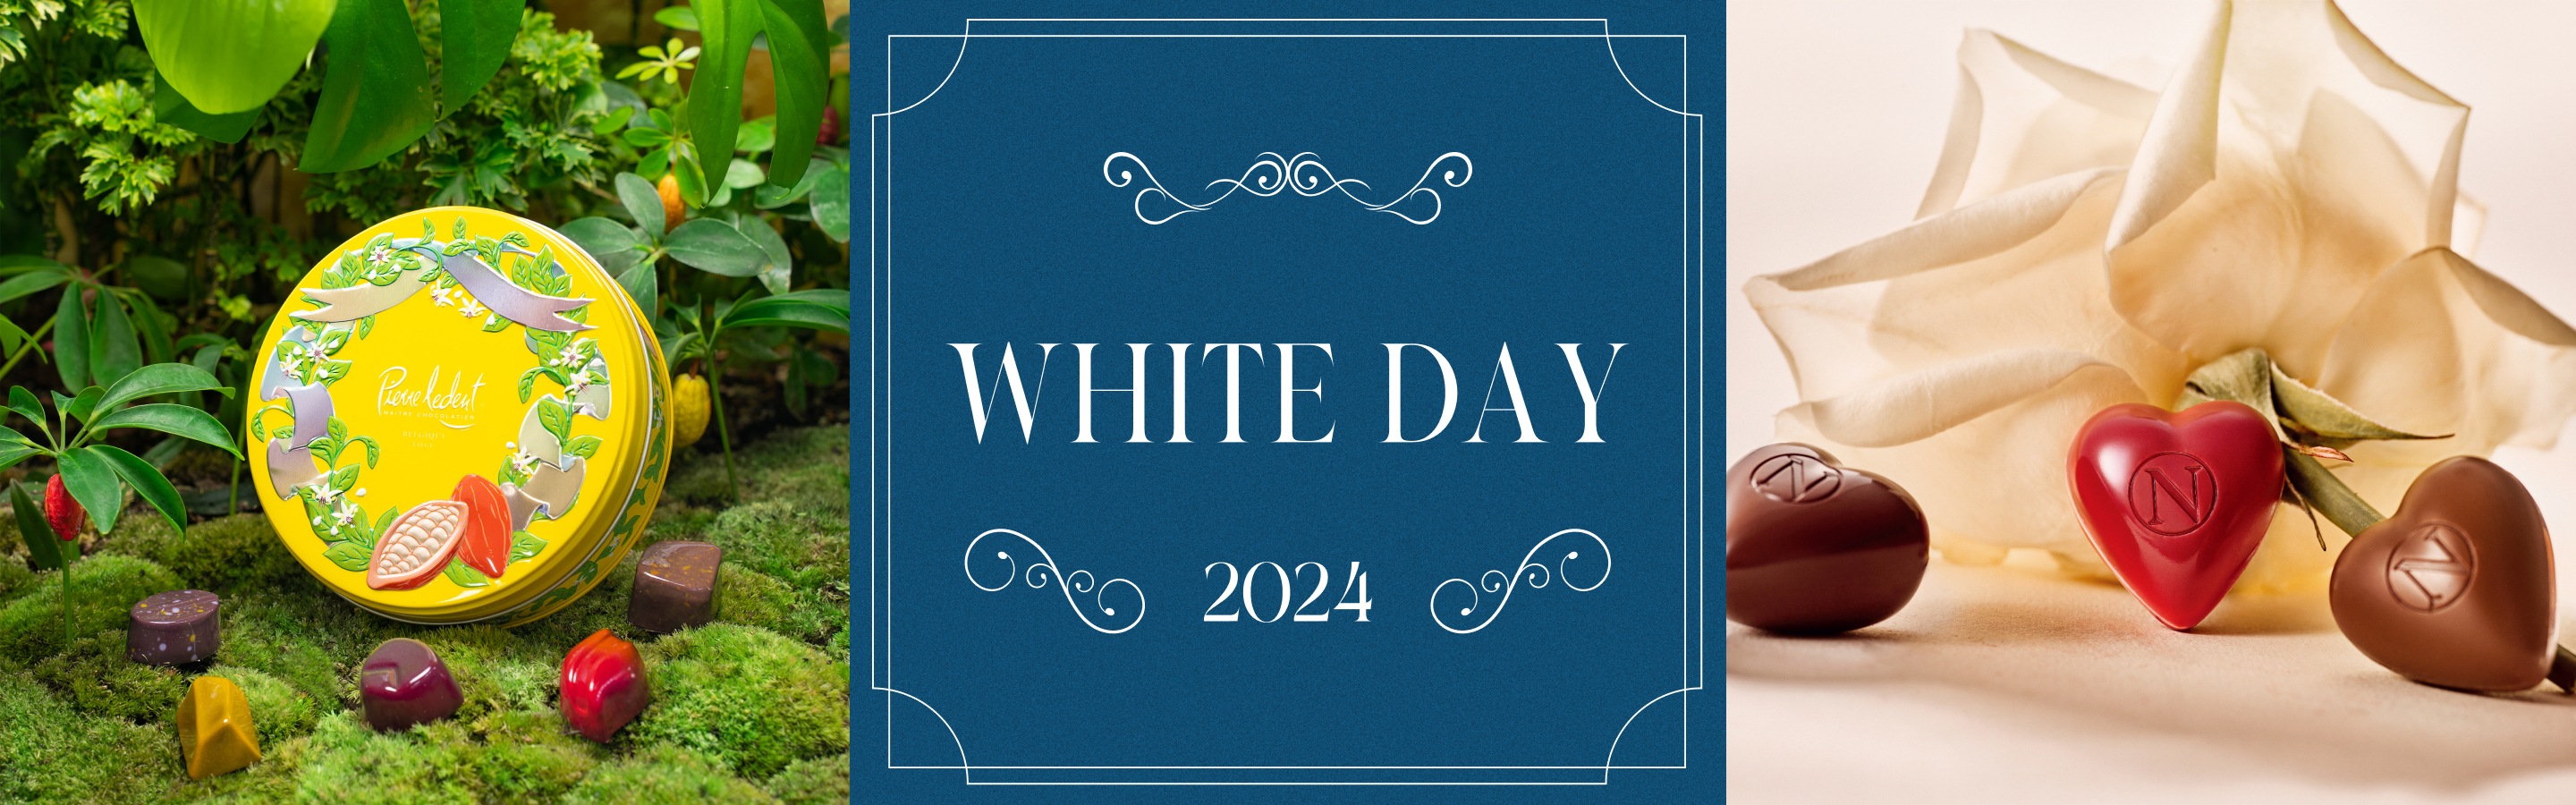 whiteDay 2024